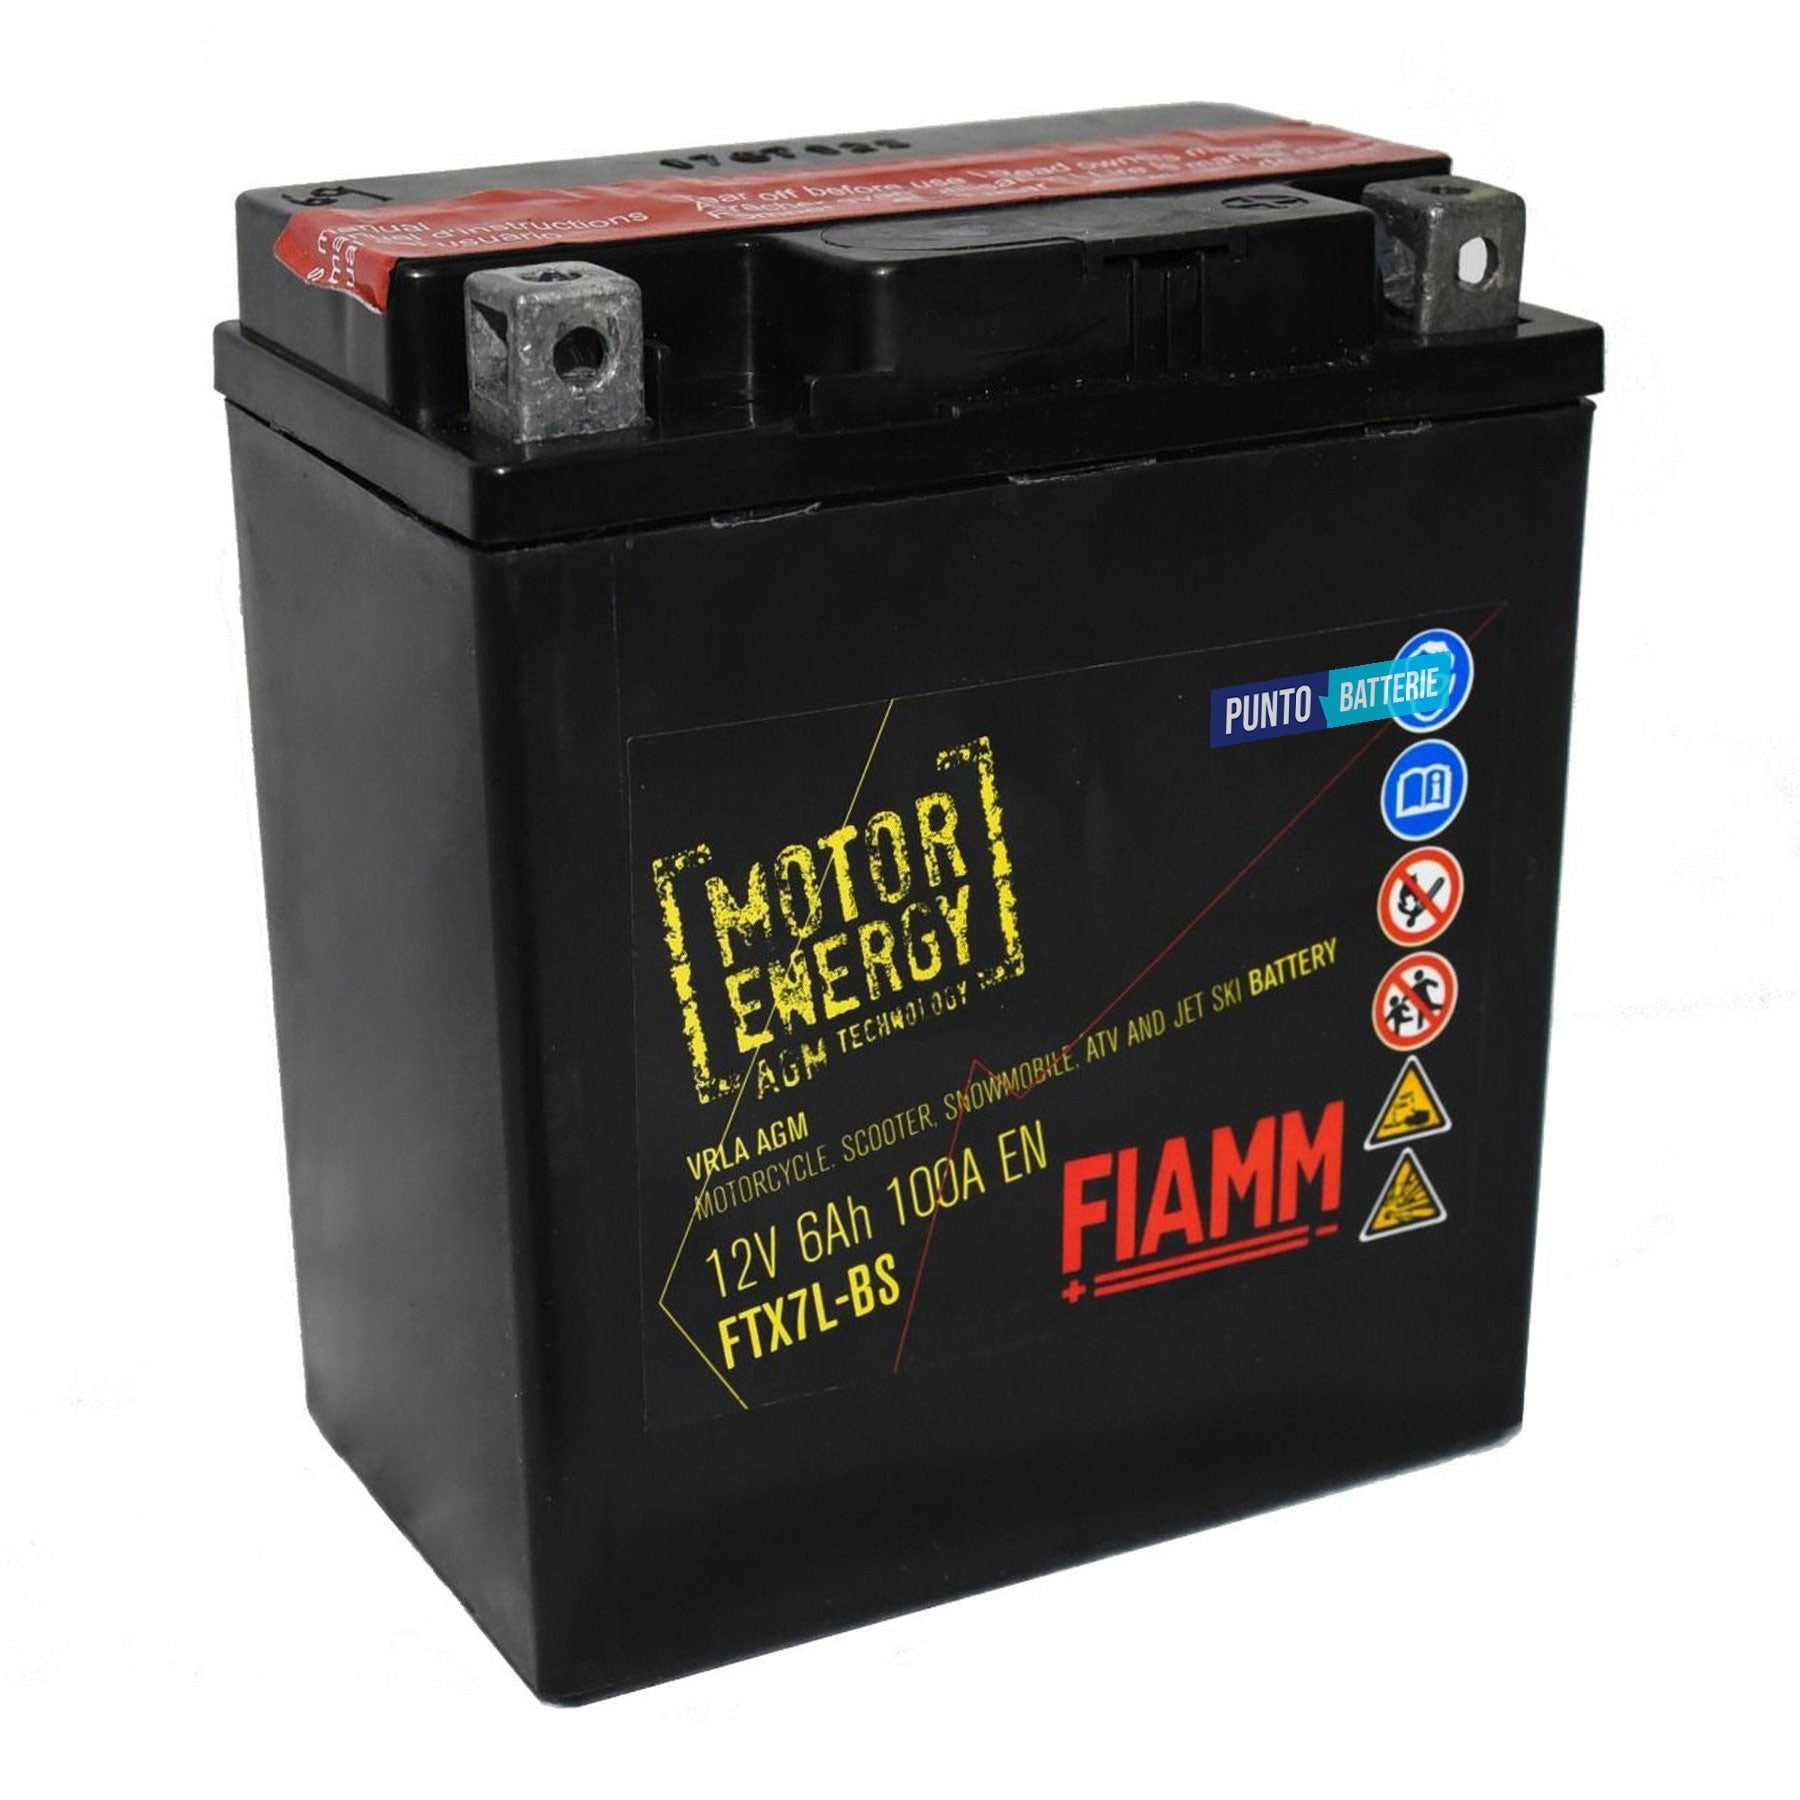 Batteria originale Fiamm Motor Energy AGM FTX7L-BS, dimensioni 113 x 70 x 130, polo positivo a destra, 12 volt, 6 amperora, 100 ampere. Batteria per moto, scooter e powersport.